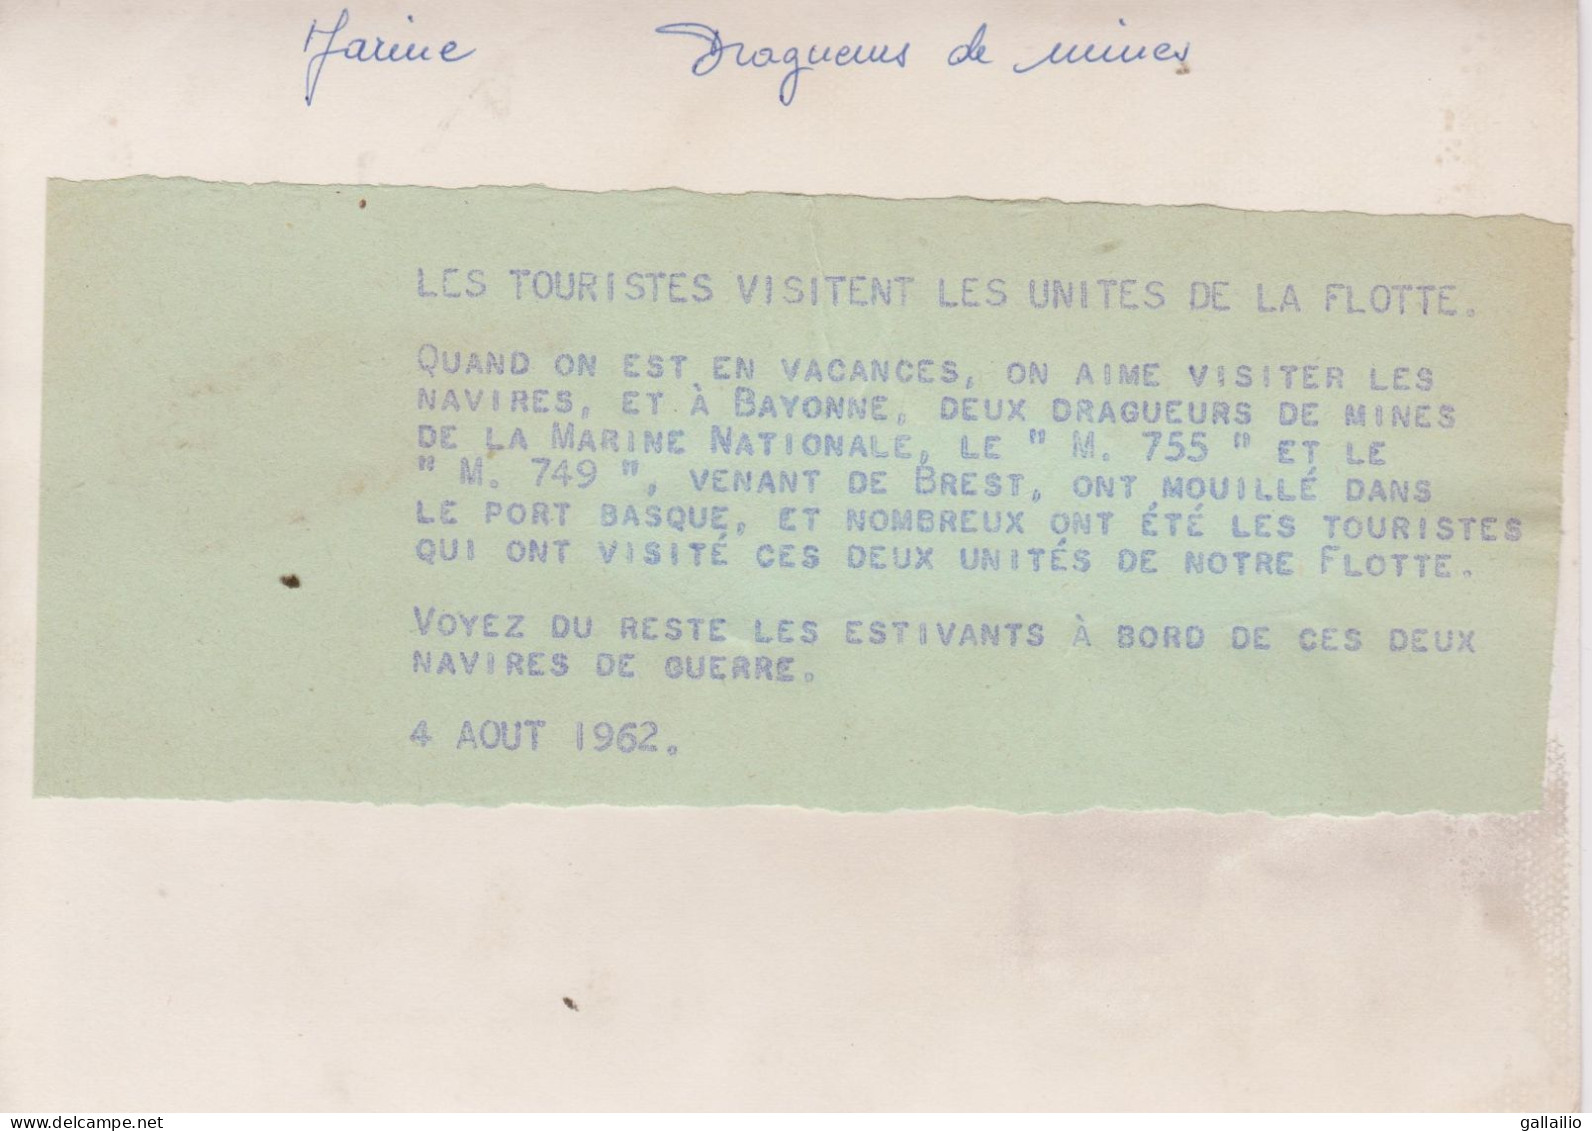 PHOTO PRESSE LES TOURISTES VISITENT DEUX DRAGUEURS DE MINES AOUT 1962 FORMAT 18 X 13 CMS - Boten